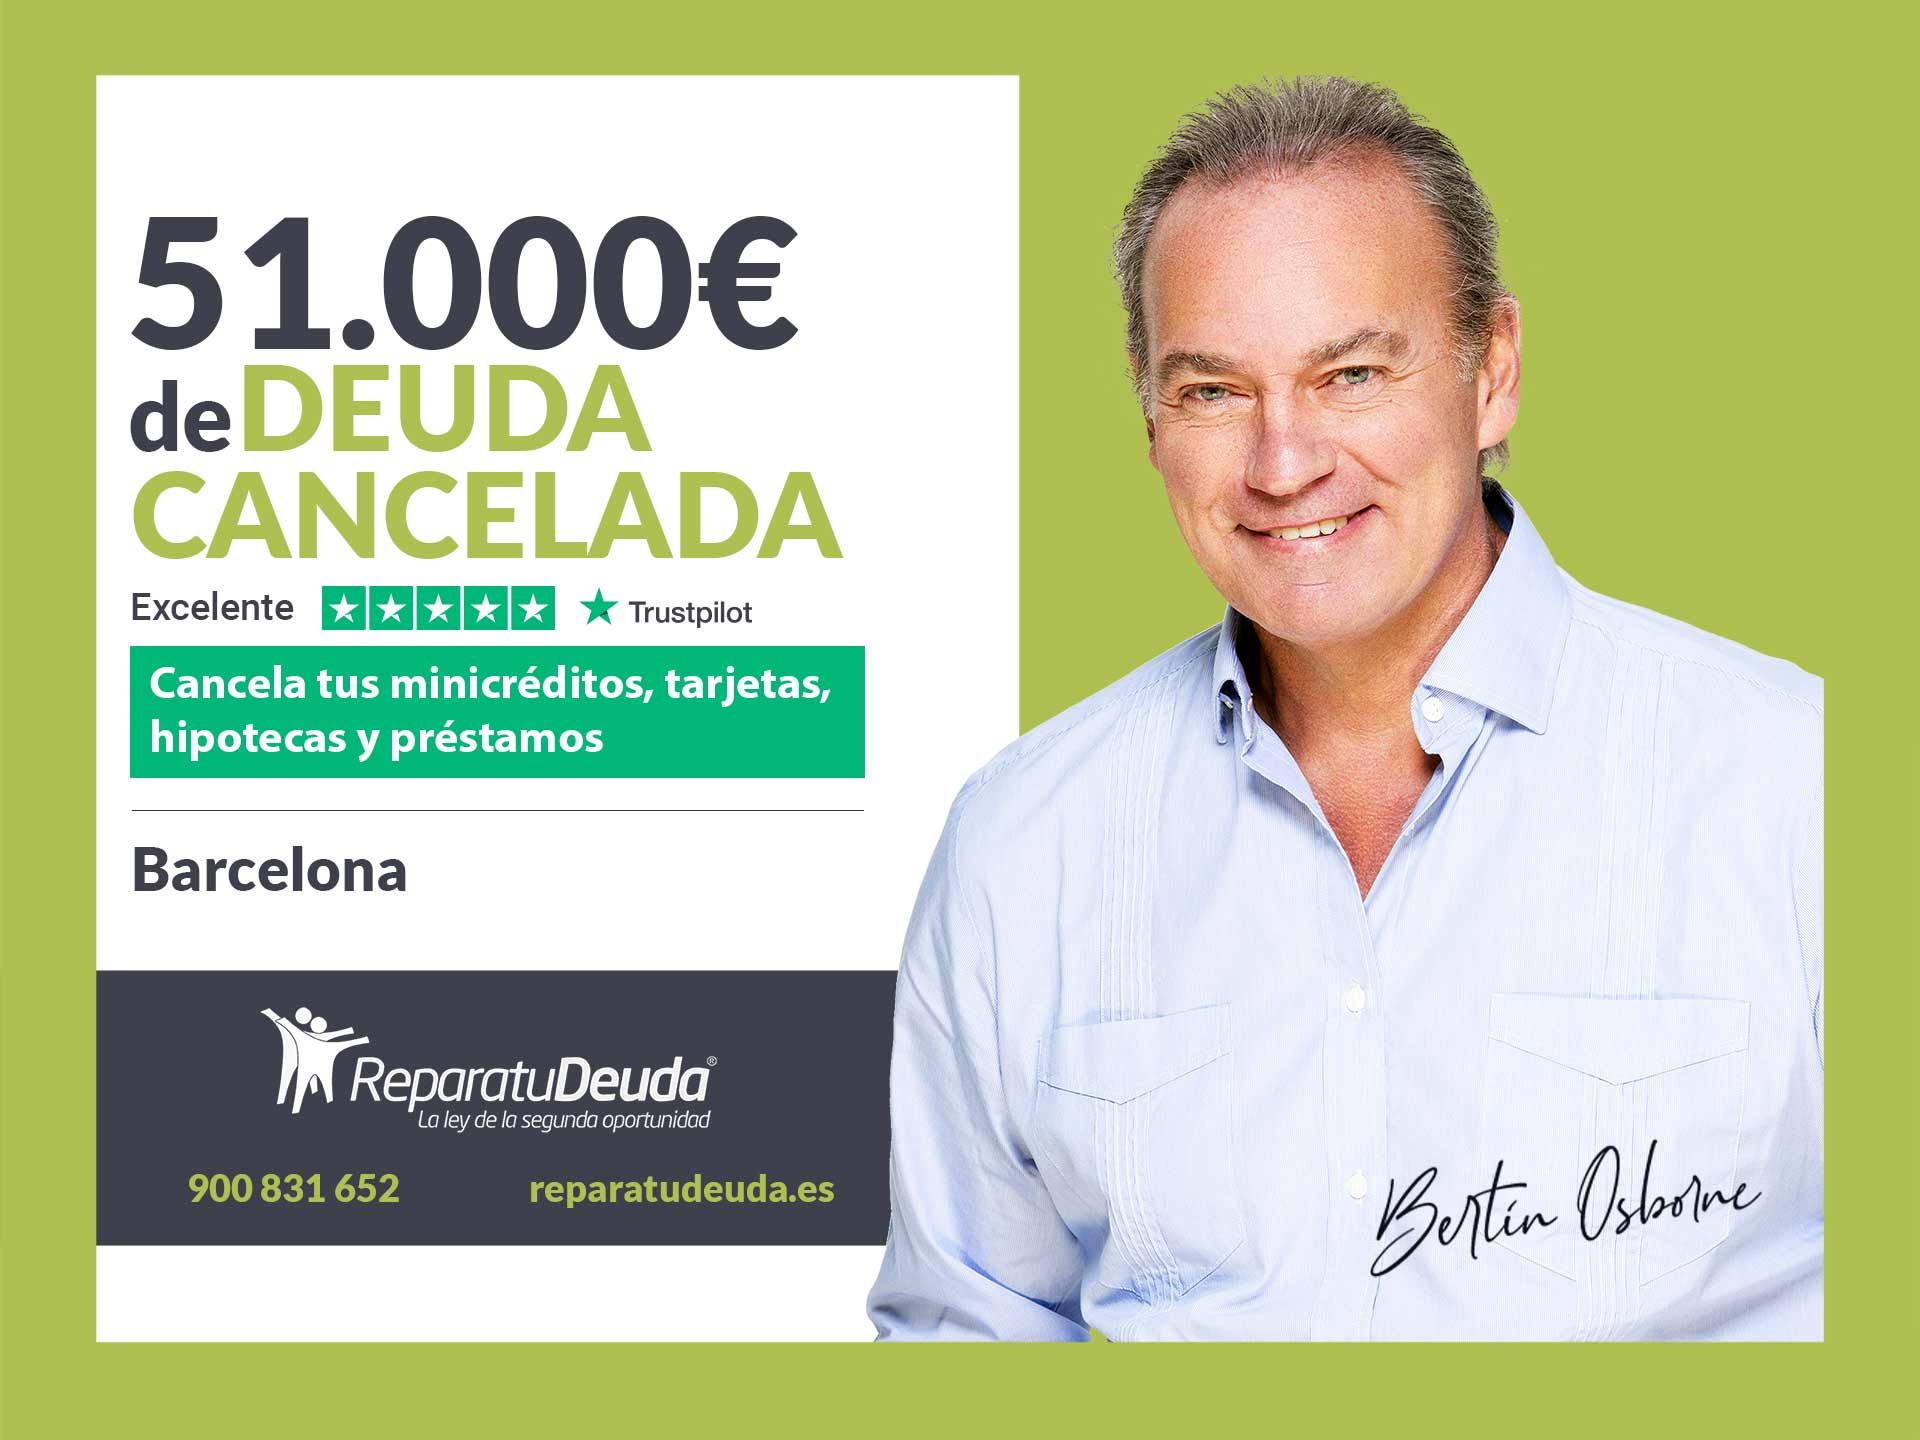 Repara tu Deuda Abogados cancela 51.000? en Barcelona (Catalunya) gracias a la Ley de Segunda Oportunidad